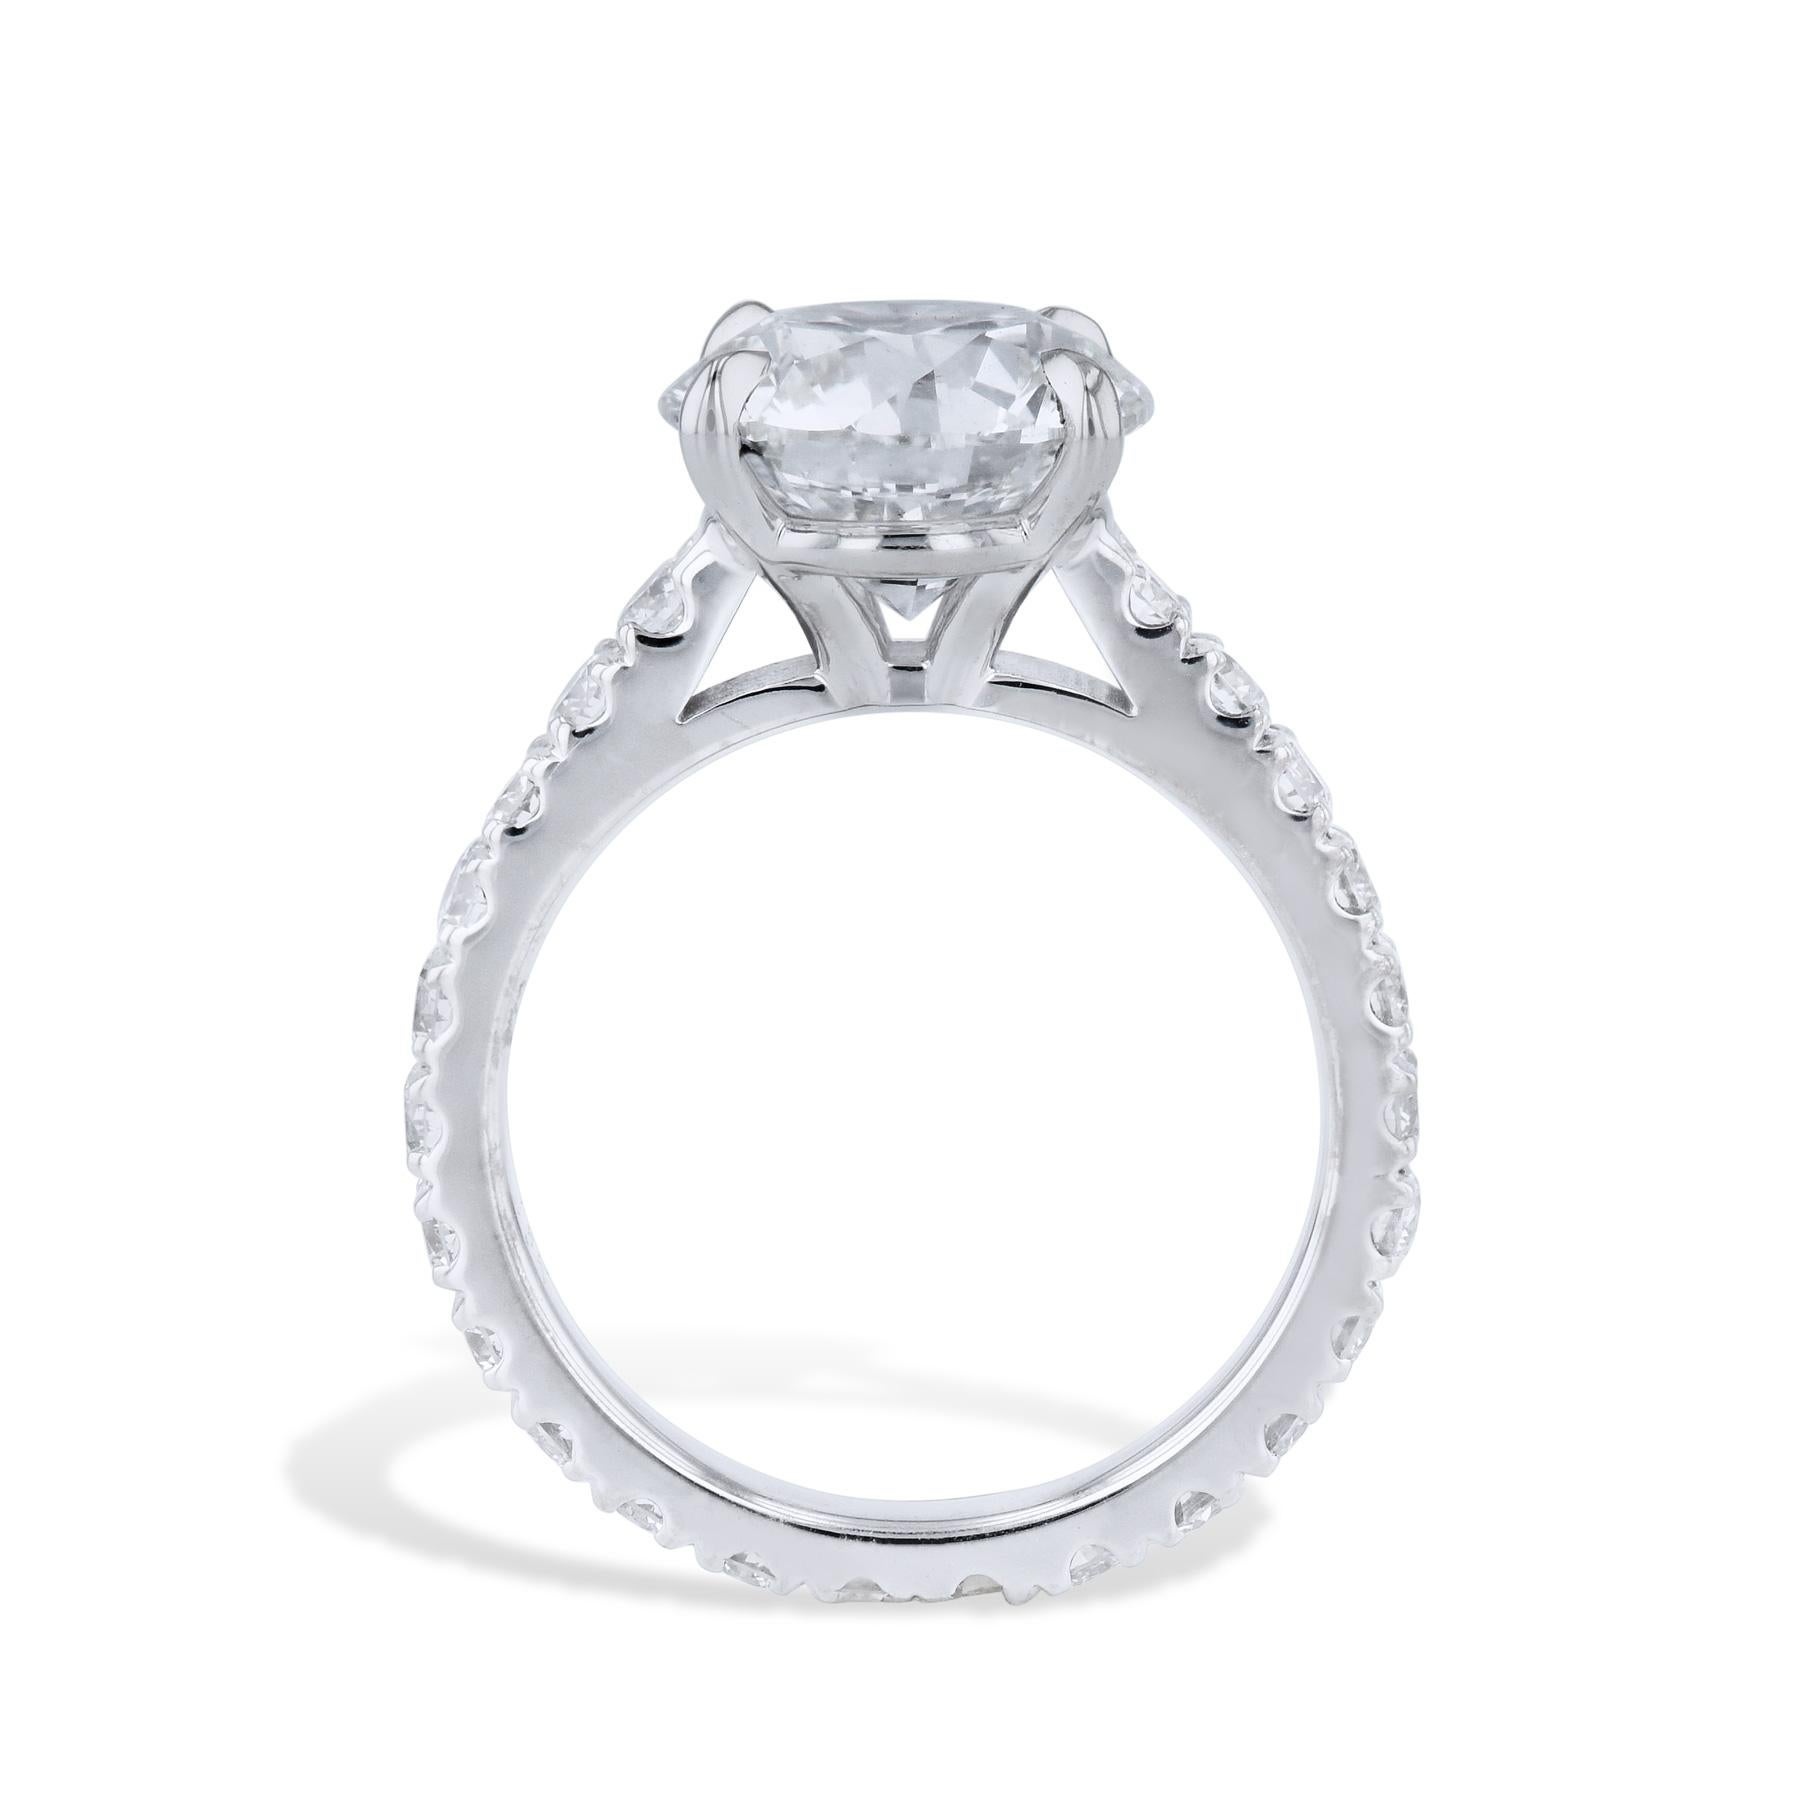 
Erleben Sie Luxus mit diesem exquisiten 3,00ct Round Diamond White Gold Estate Ring! Der atemberaubende Mitteldiamant ist aus 18-karätigem Weißgold gefertigt und wird von 24 diamantbesetzten Pflastersteinen begleitet. Ziehen Sie ihn an und zeigen